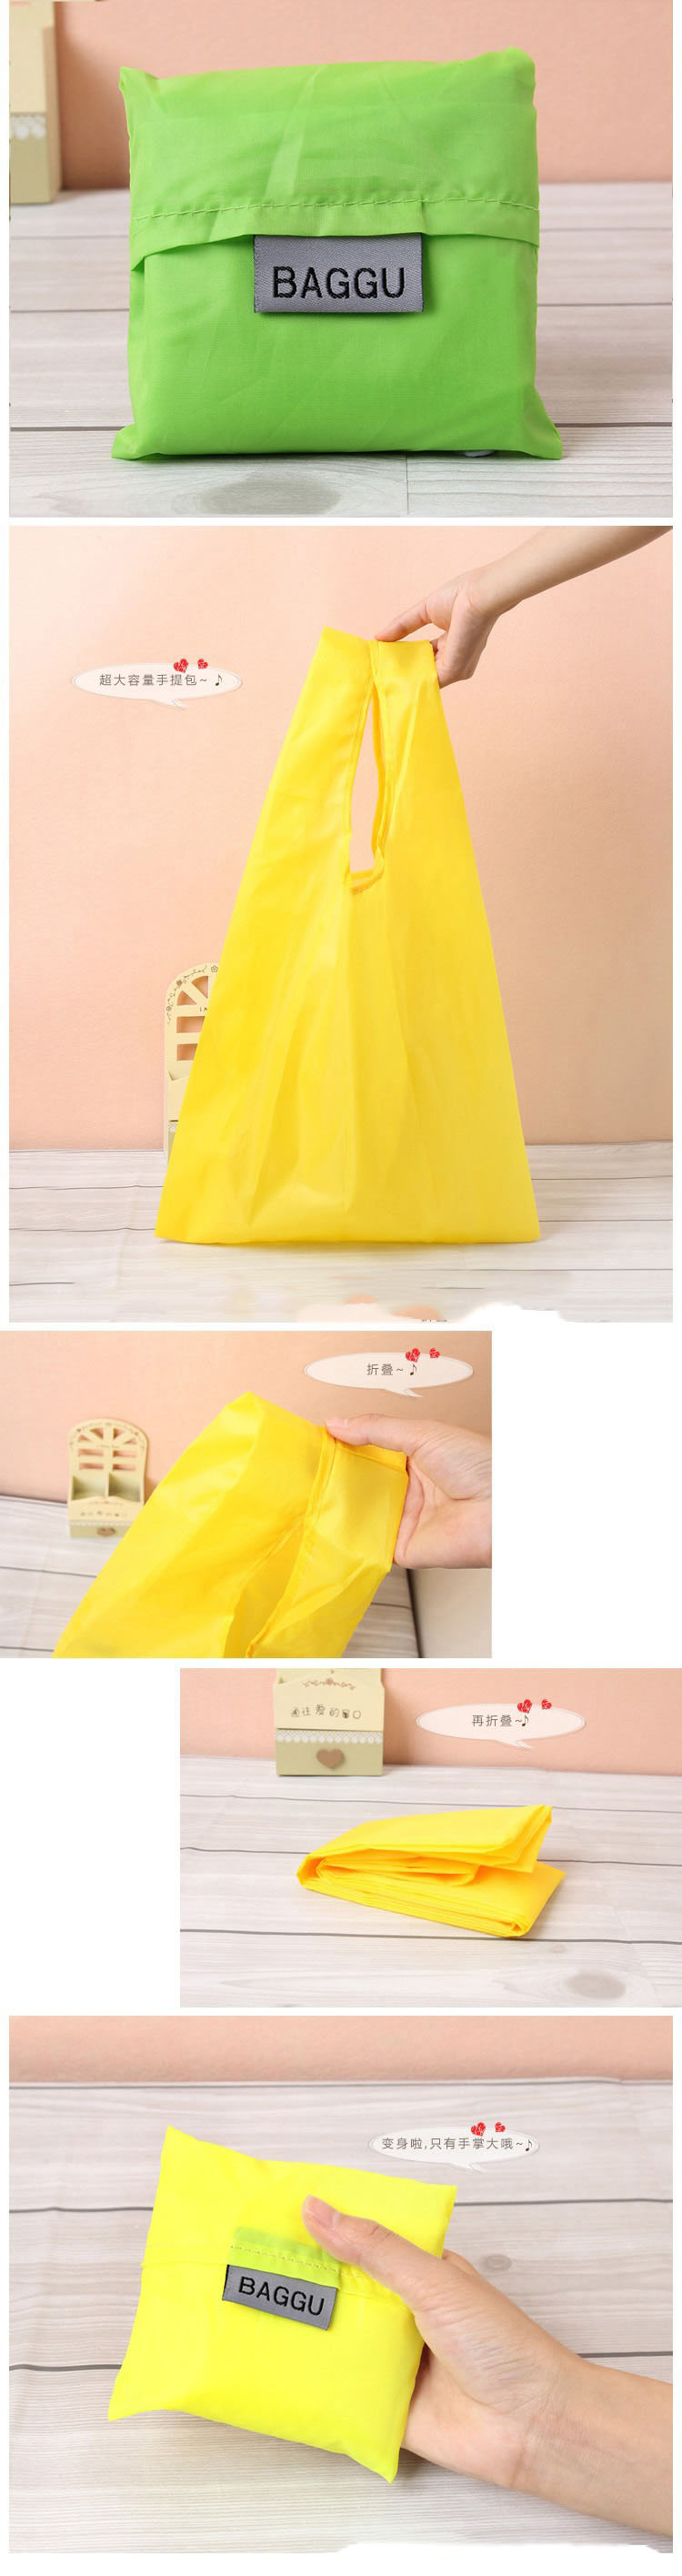 TS折叠购物袋手提袋创意礼品购物袋涤纶 折叠纯色折叠购物袋方包详情9